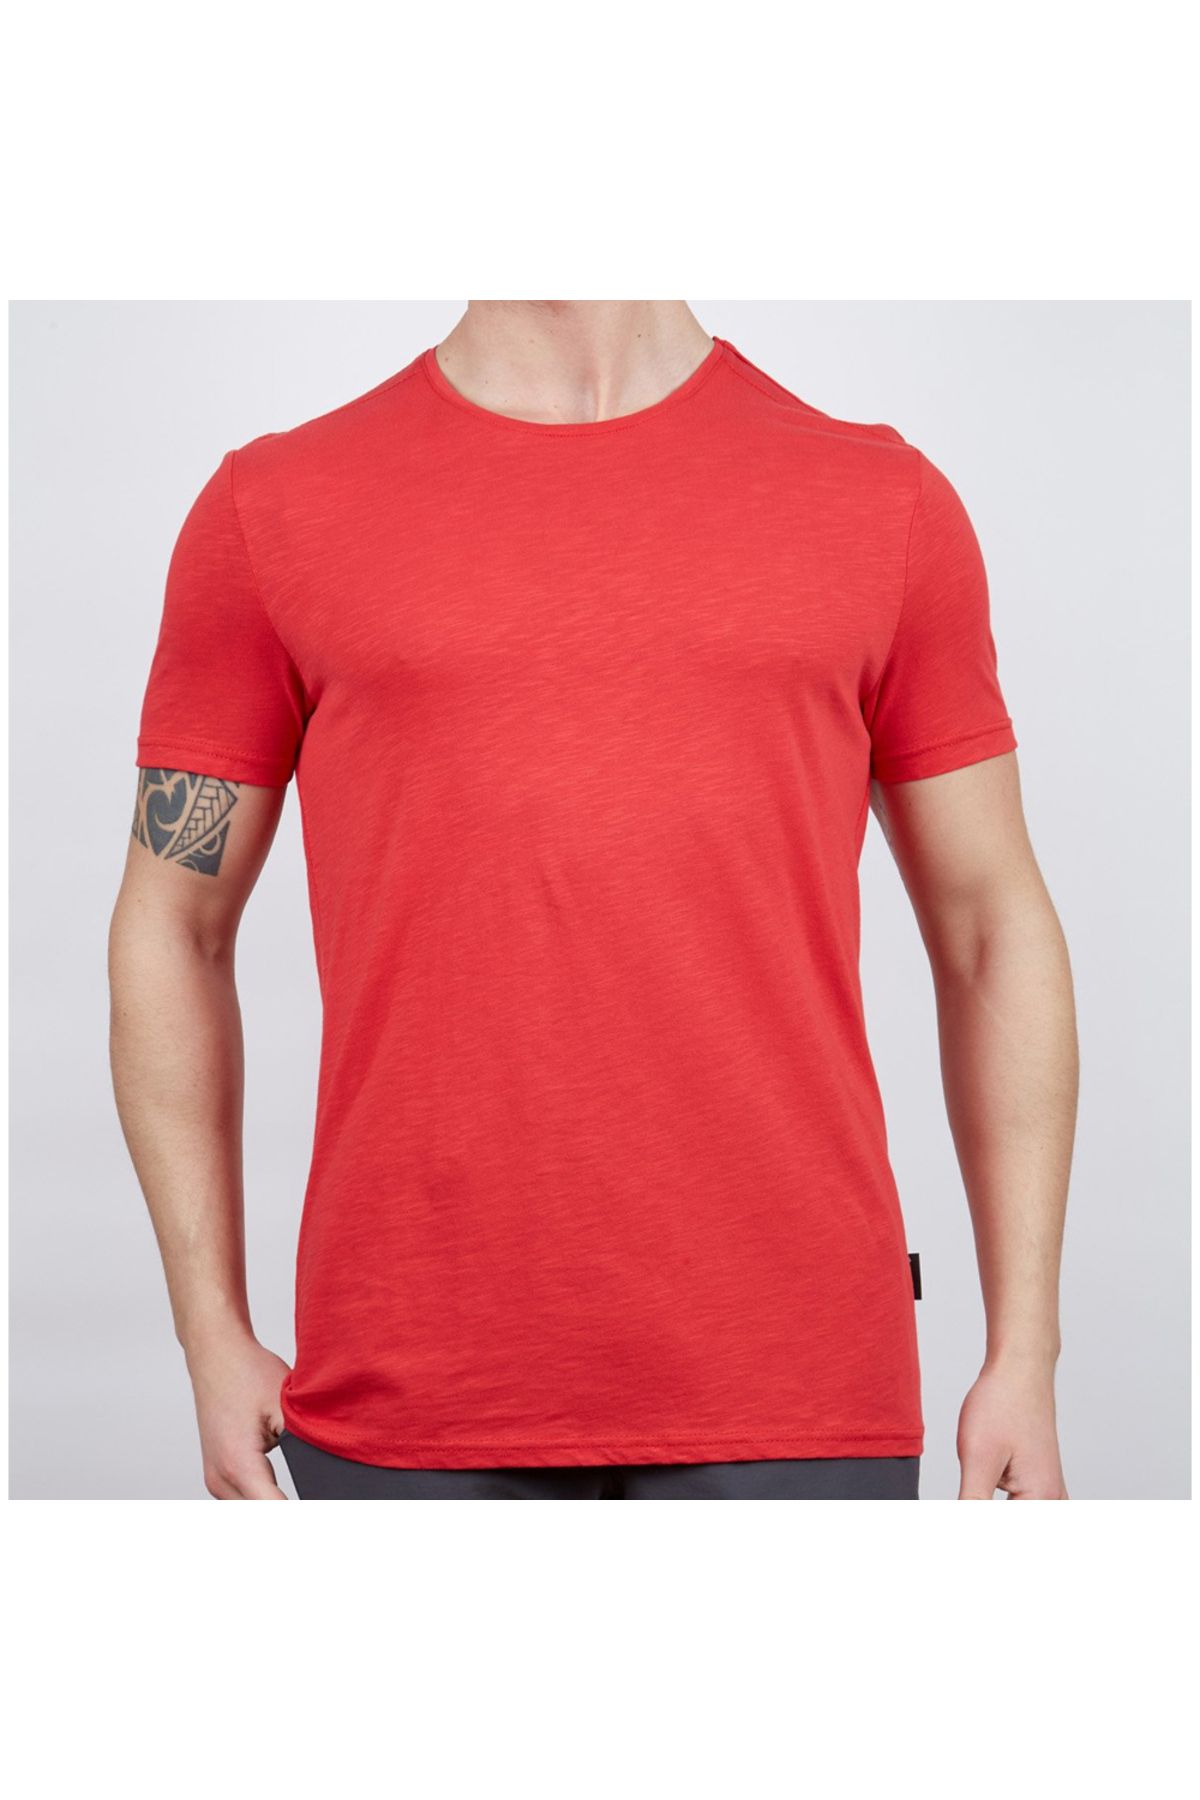 Genel Markalar Basic Erkek Pamuklu T-shirt Kırmızı (600400)